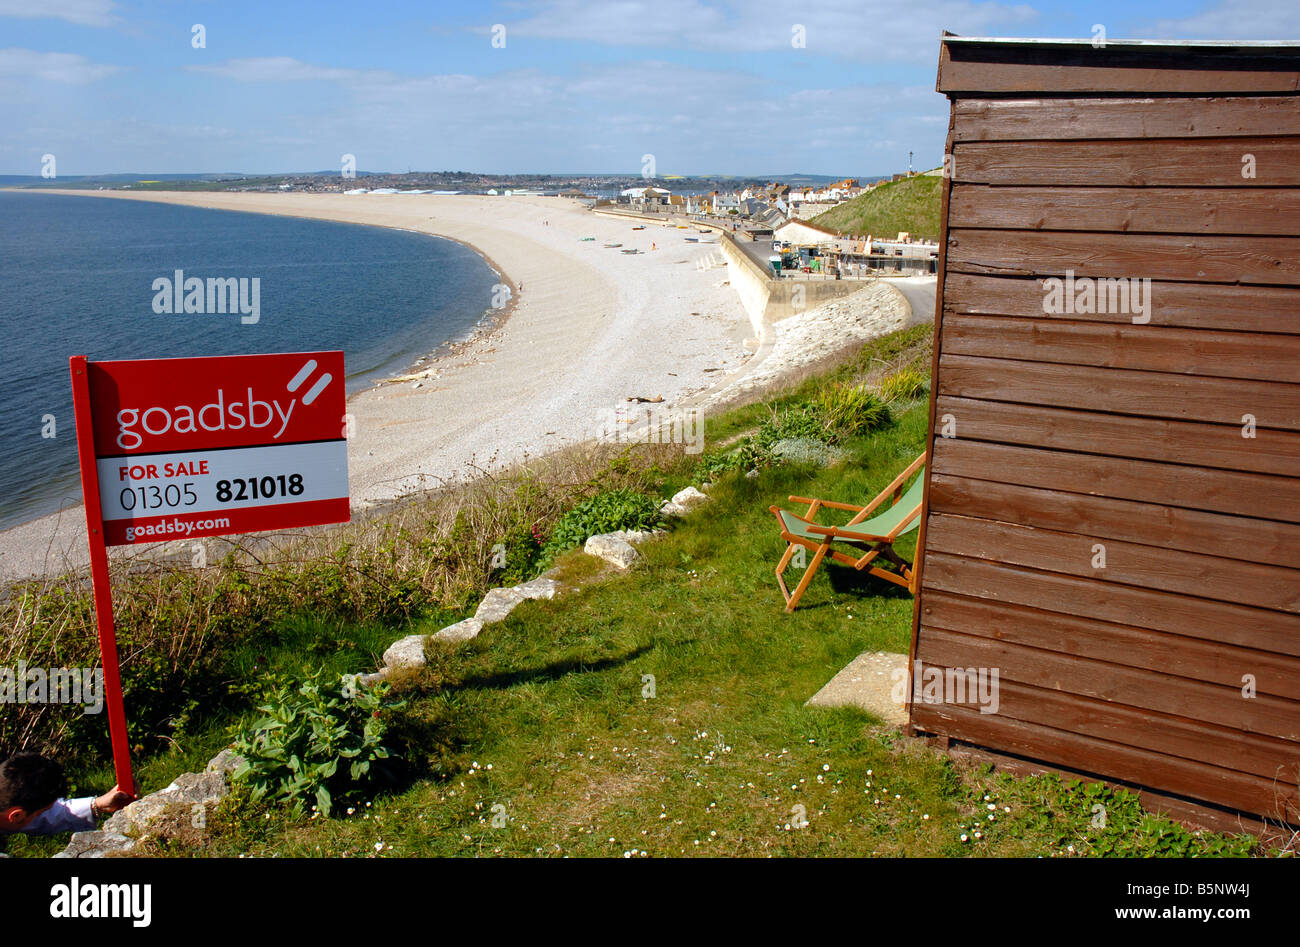 Cabane de plage à vendre, Portland, Dorset, Angleterre, Royaume-Uni Banque D'Images